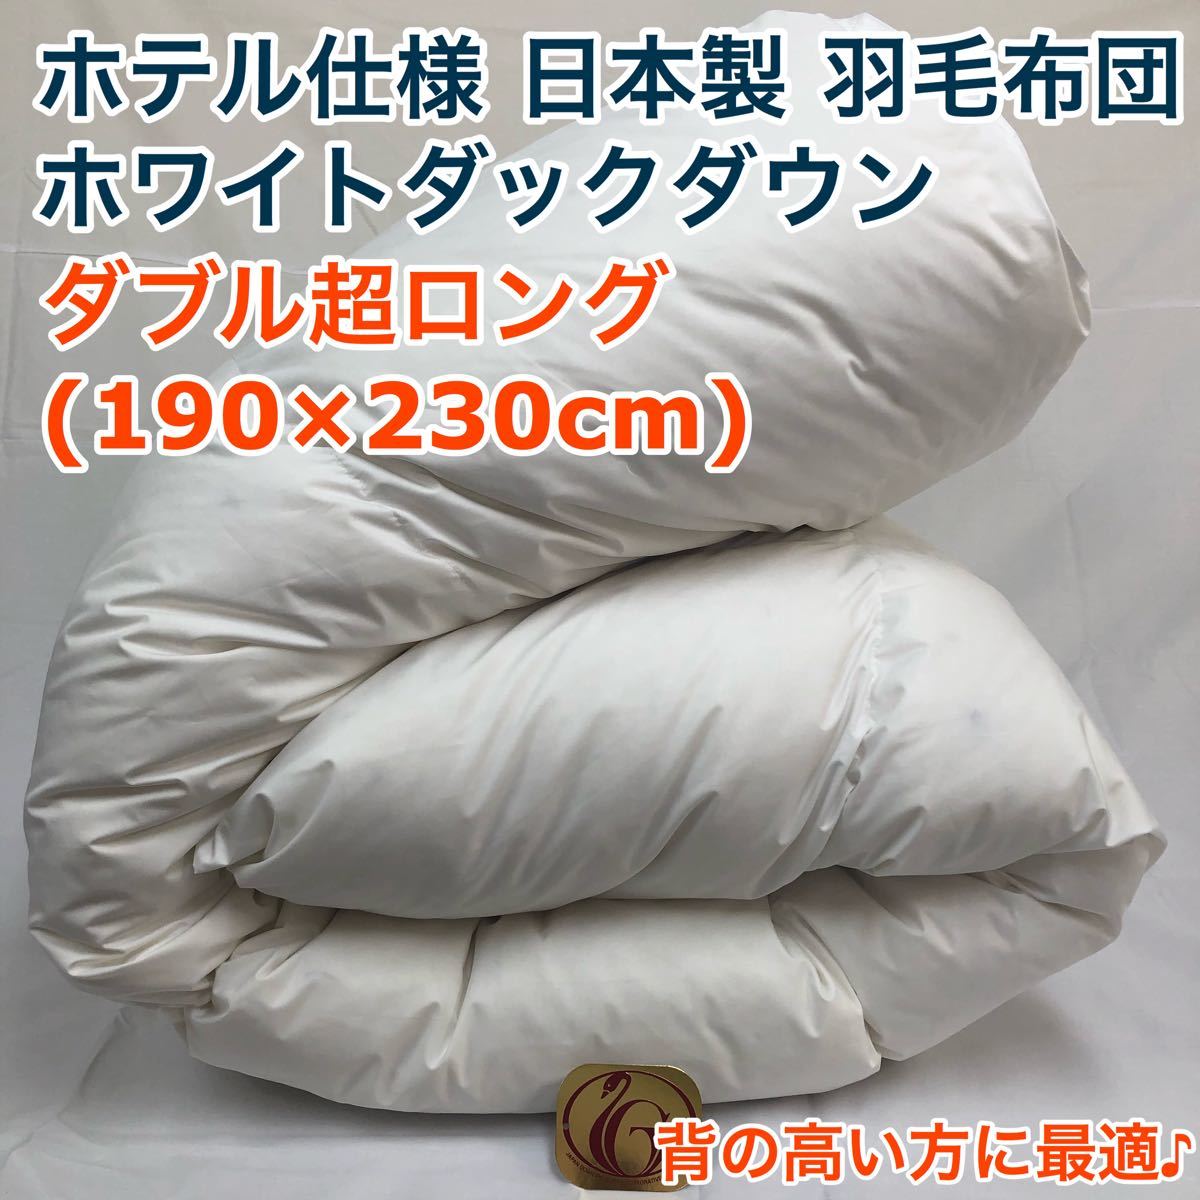 安心 保証 羽毛布団 ダブル超ロング ニューゴールド 白色 日本製 190